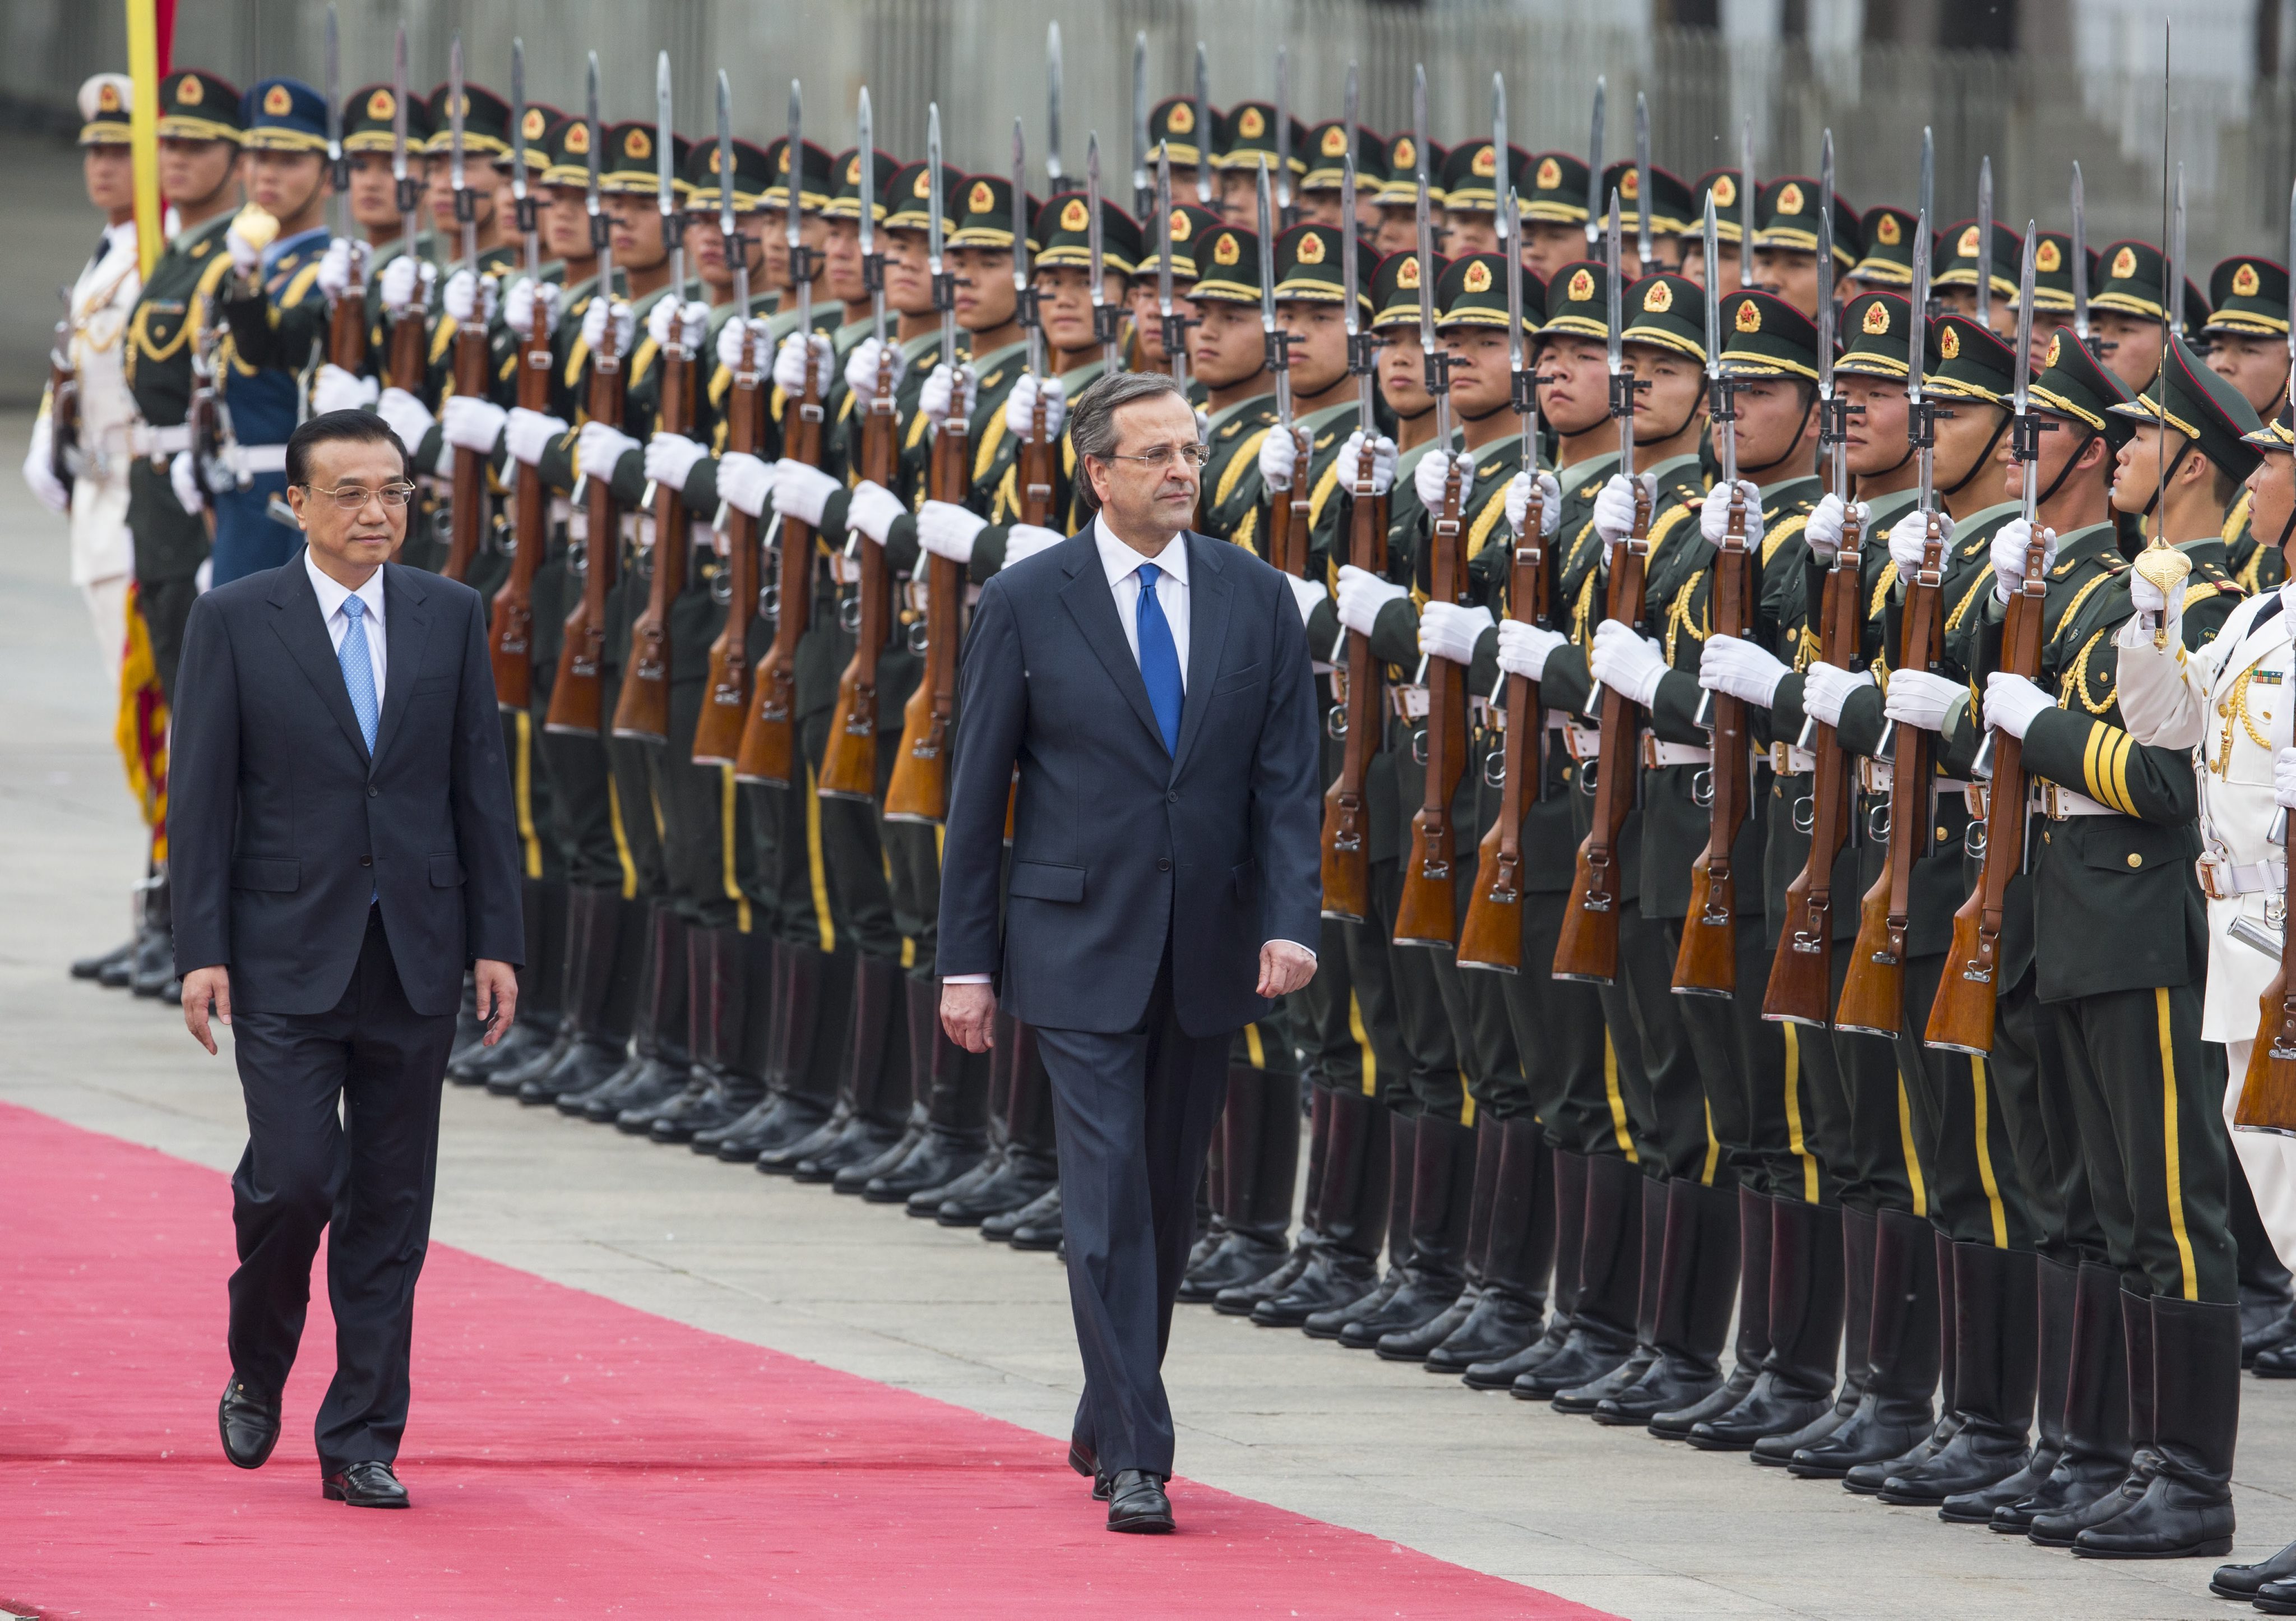 Αντώνης Σαμαράς: Η Ελλάδα μπορεί να γίνει πύλη για επενδύσεις μεταξύ Κίνας και Ευρώπης